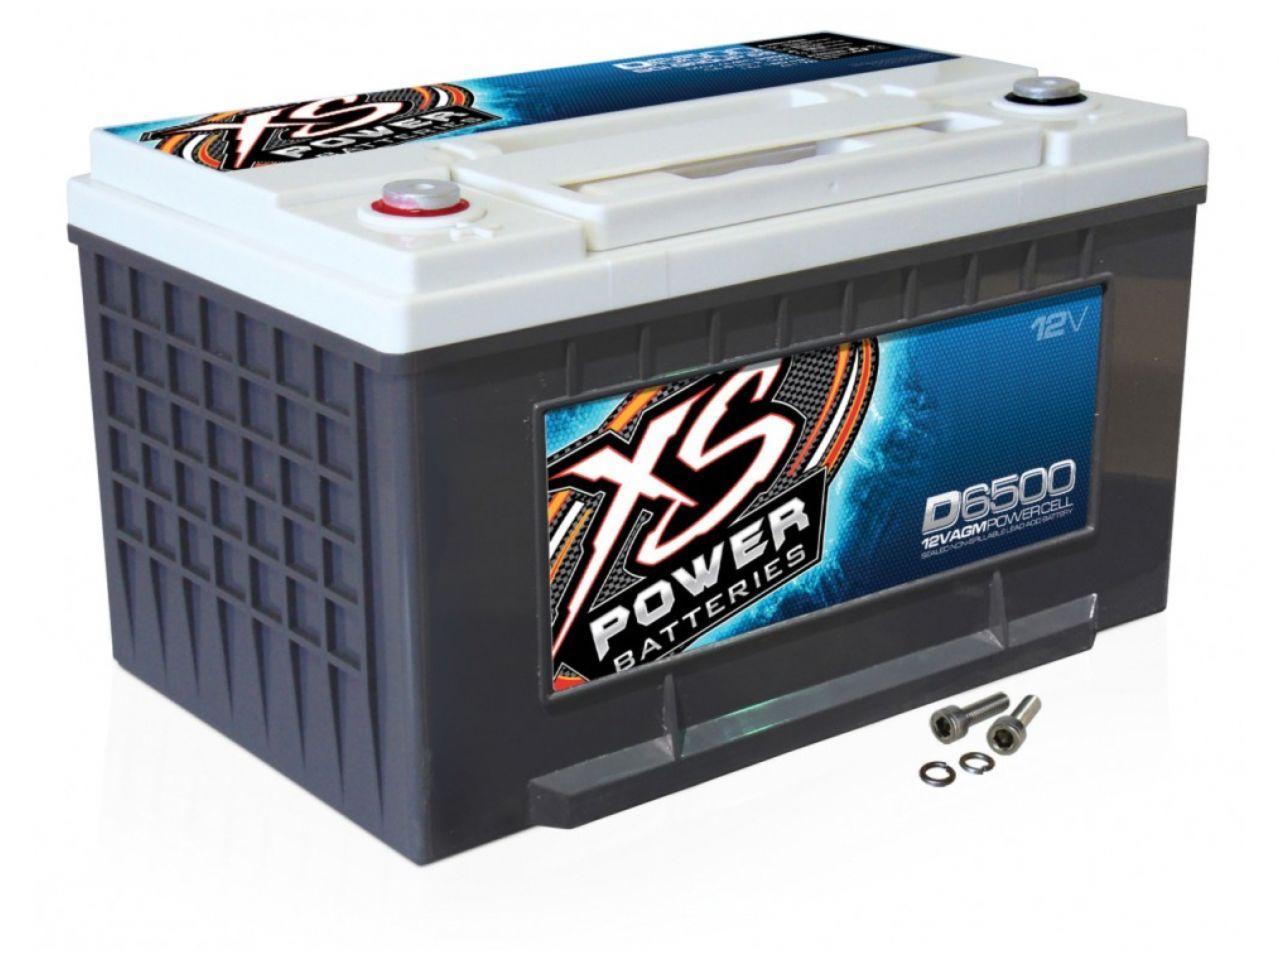 XS Power Batteries D6500 Item Image